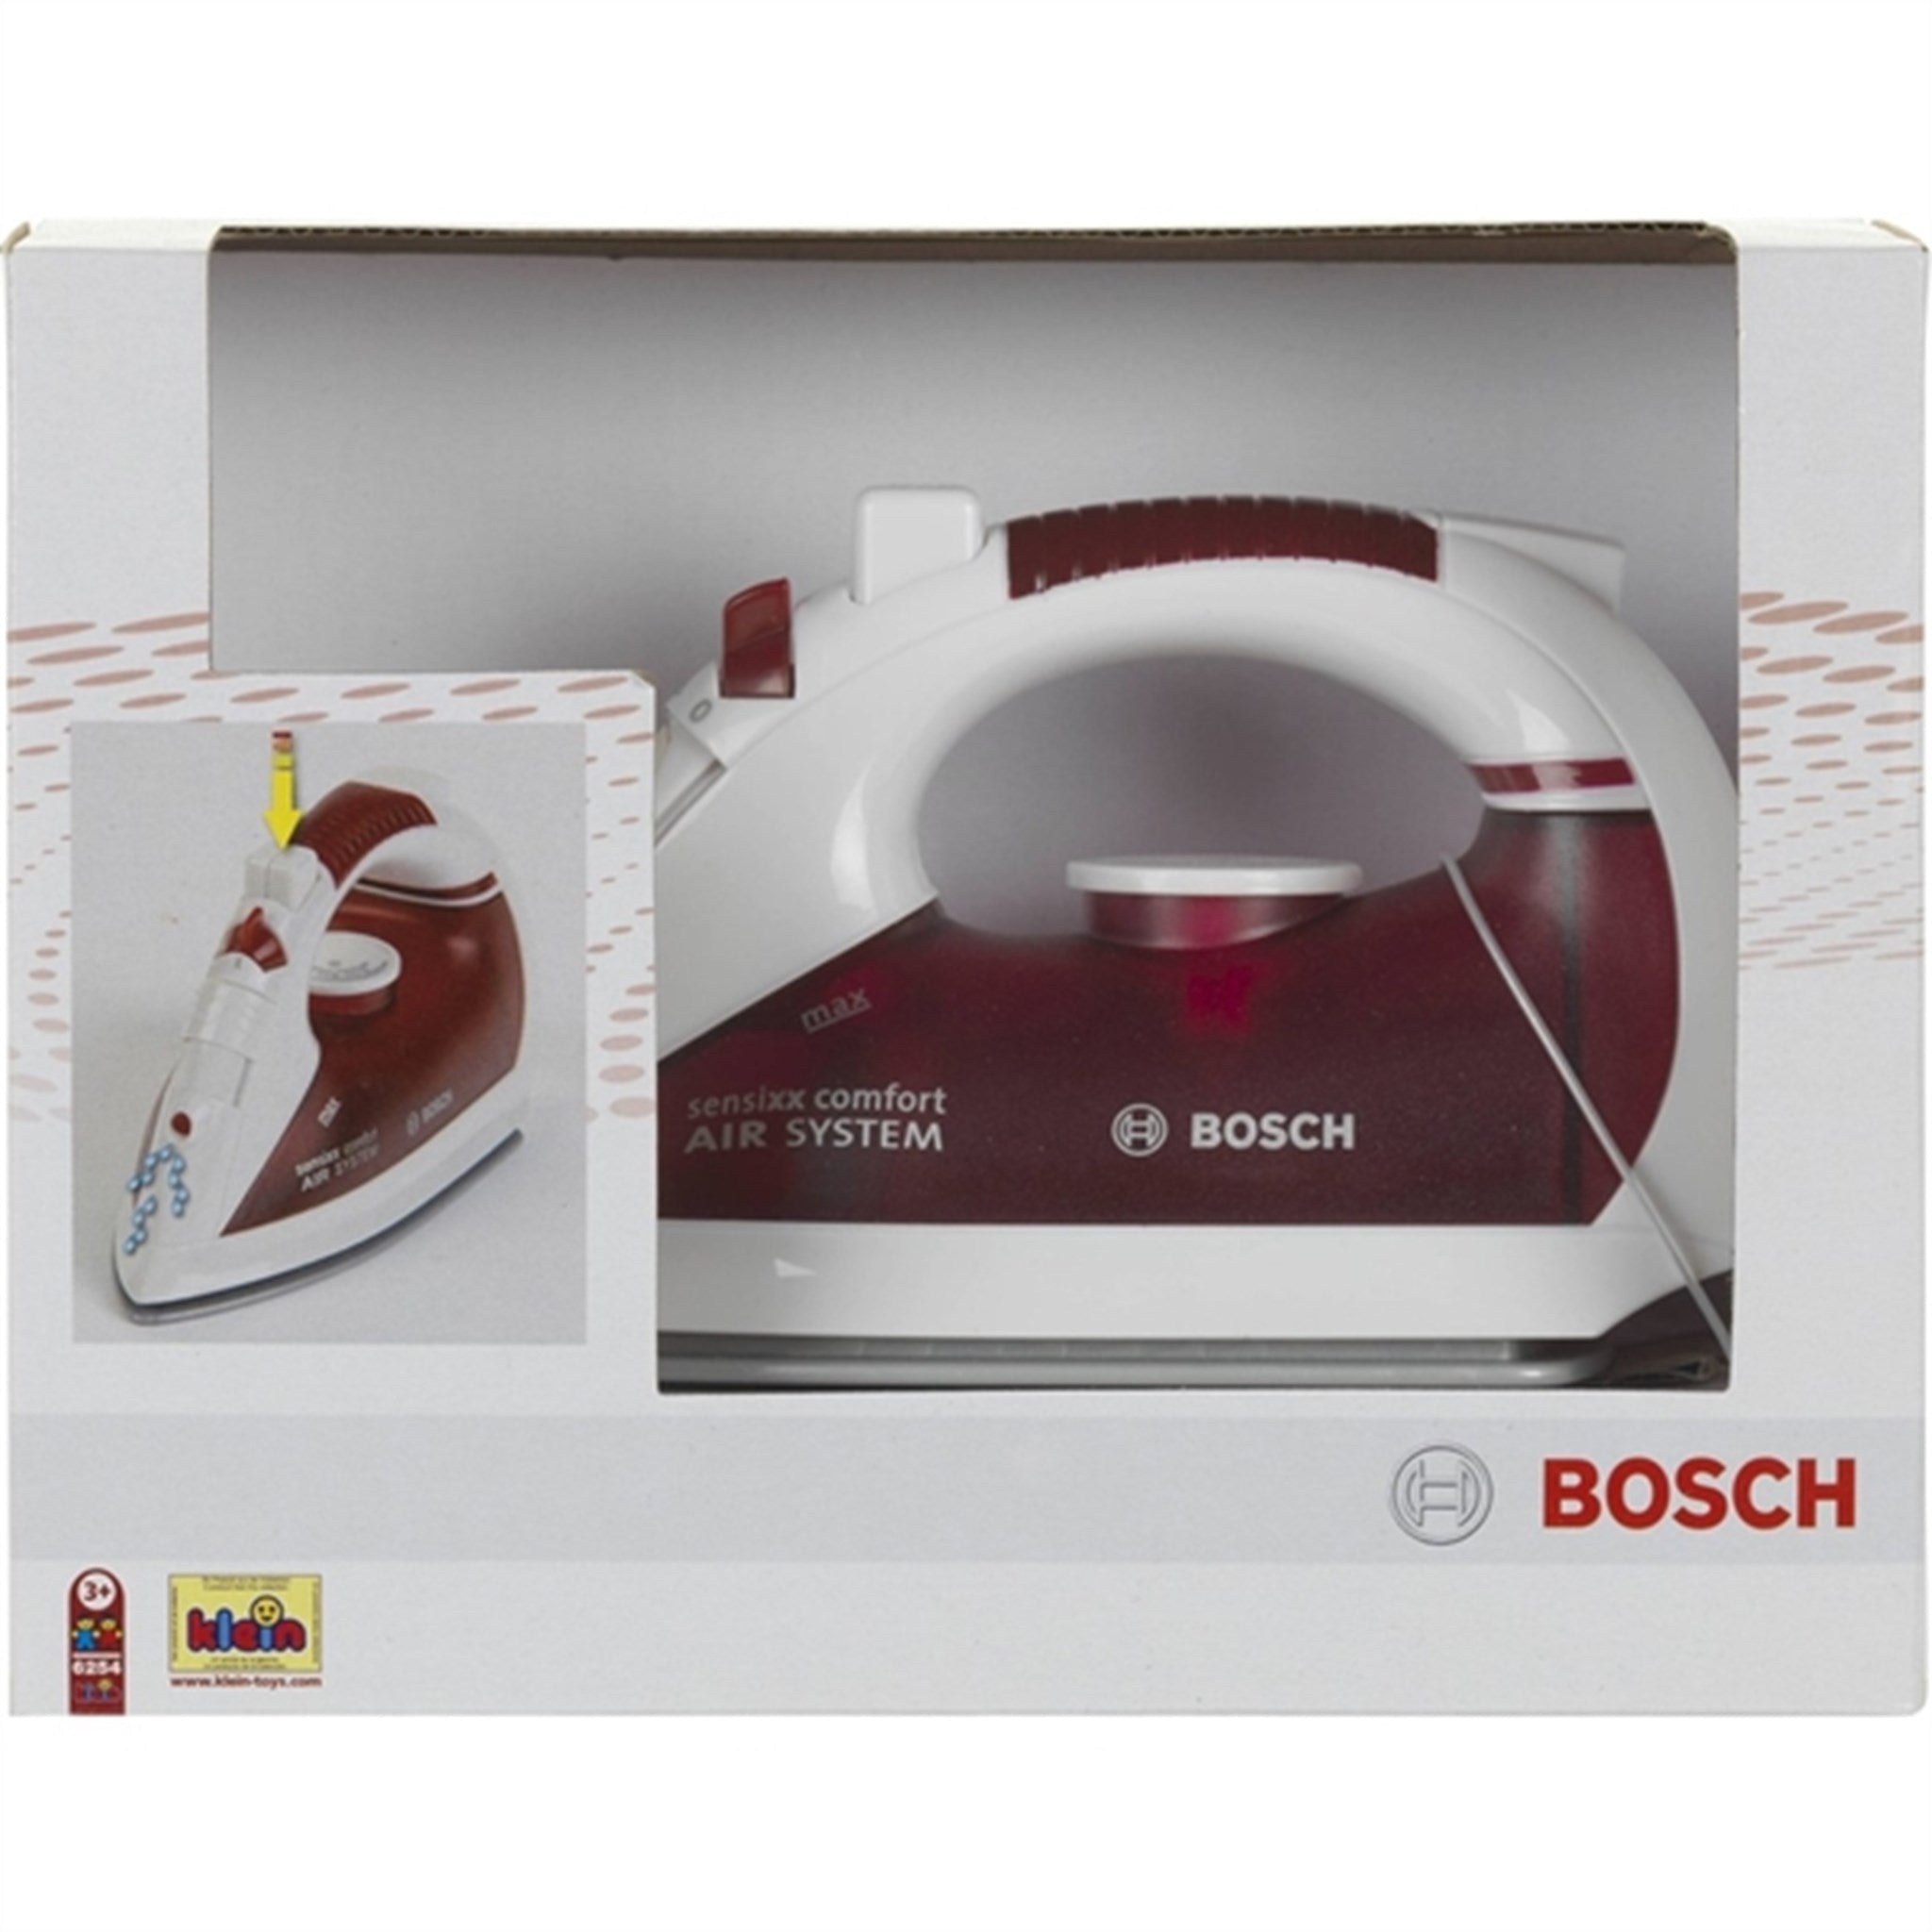 Bosch Ångstrykjärn 3